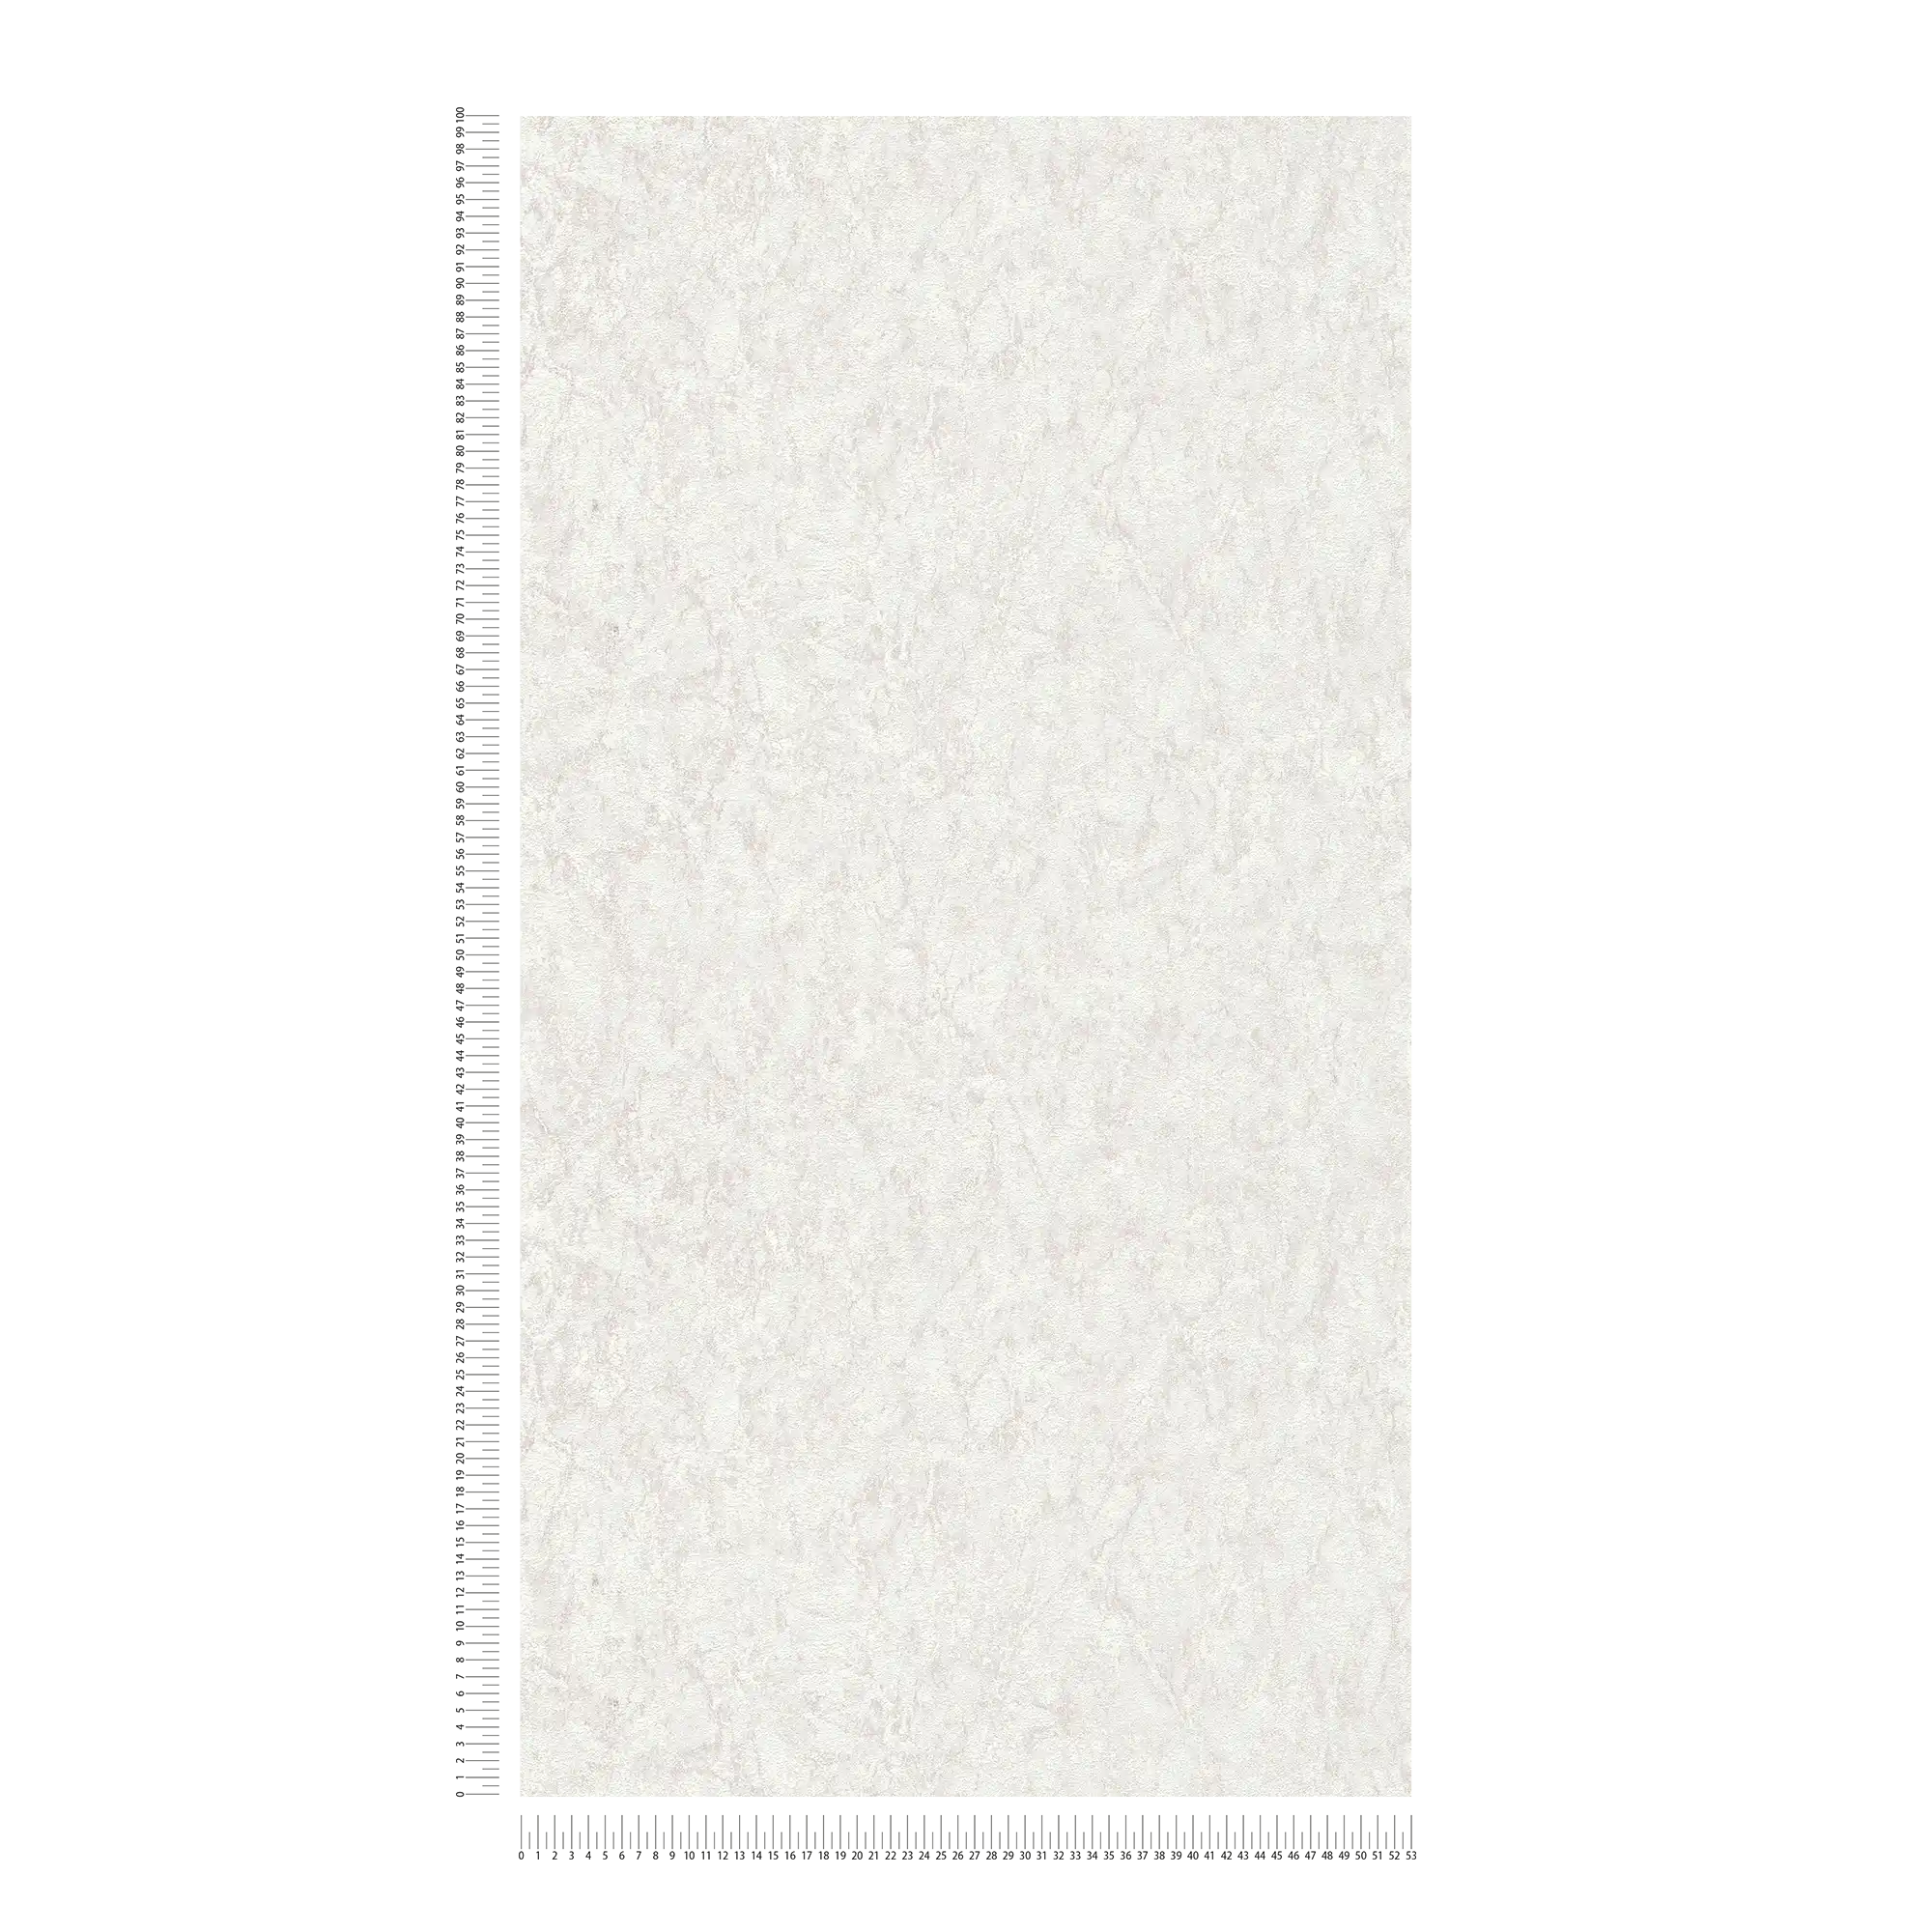             Papier peint uni avec effet texturé & dessin chiné - gris, beige, crème
        